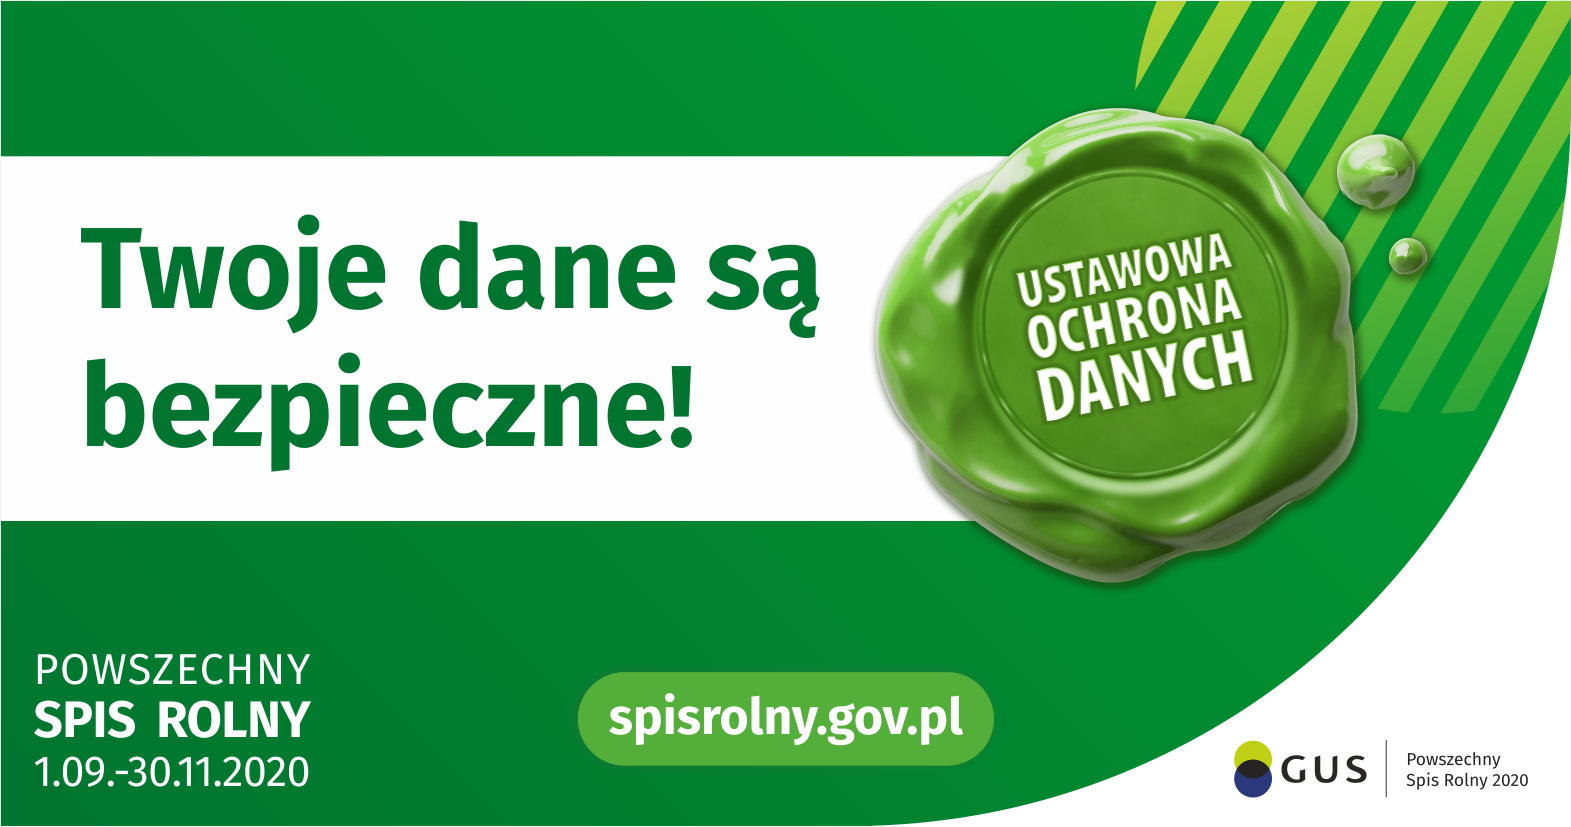 Powszechny Spis Rolny, Twoje dane są bezpieczne. spisrolny.gov.pl